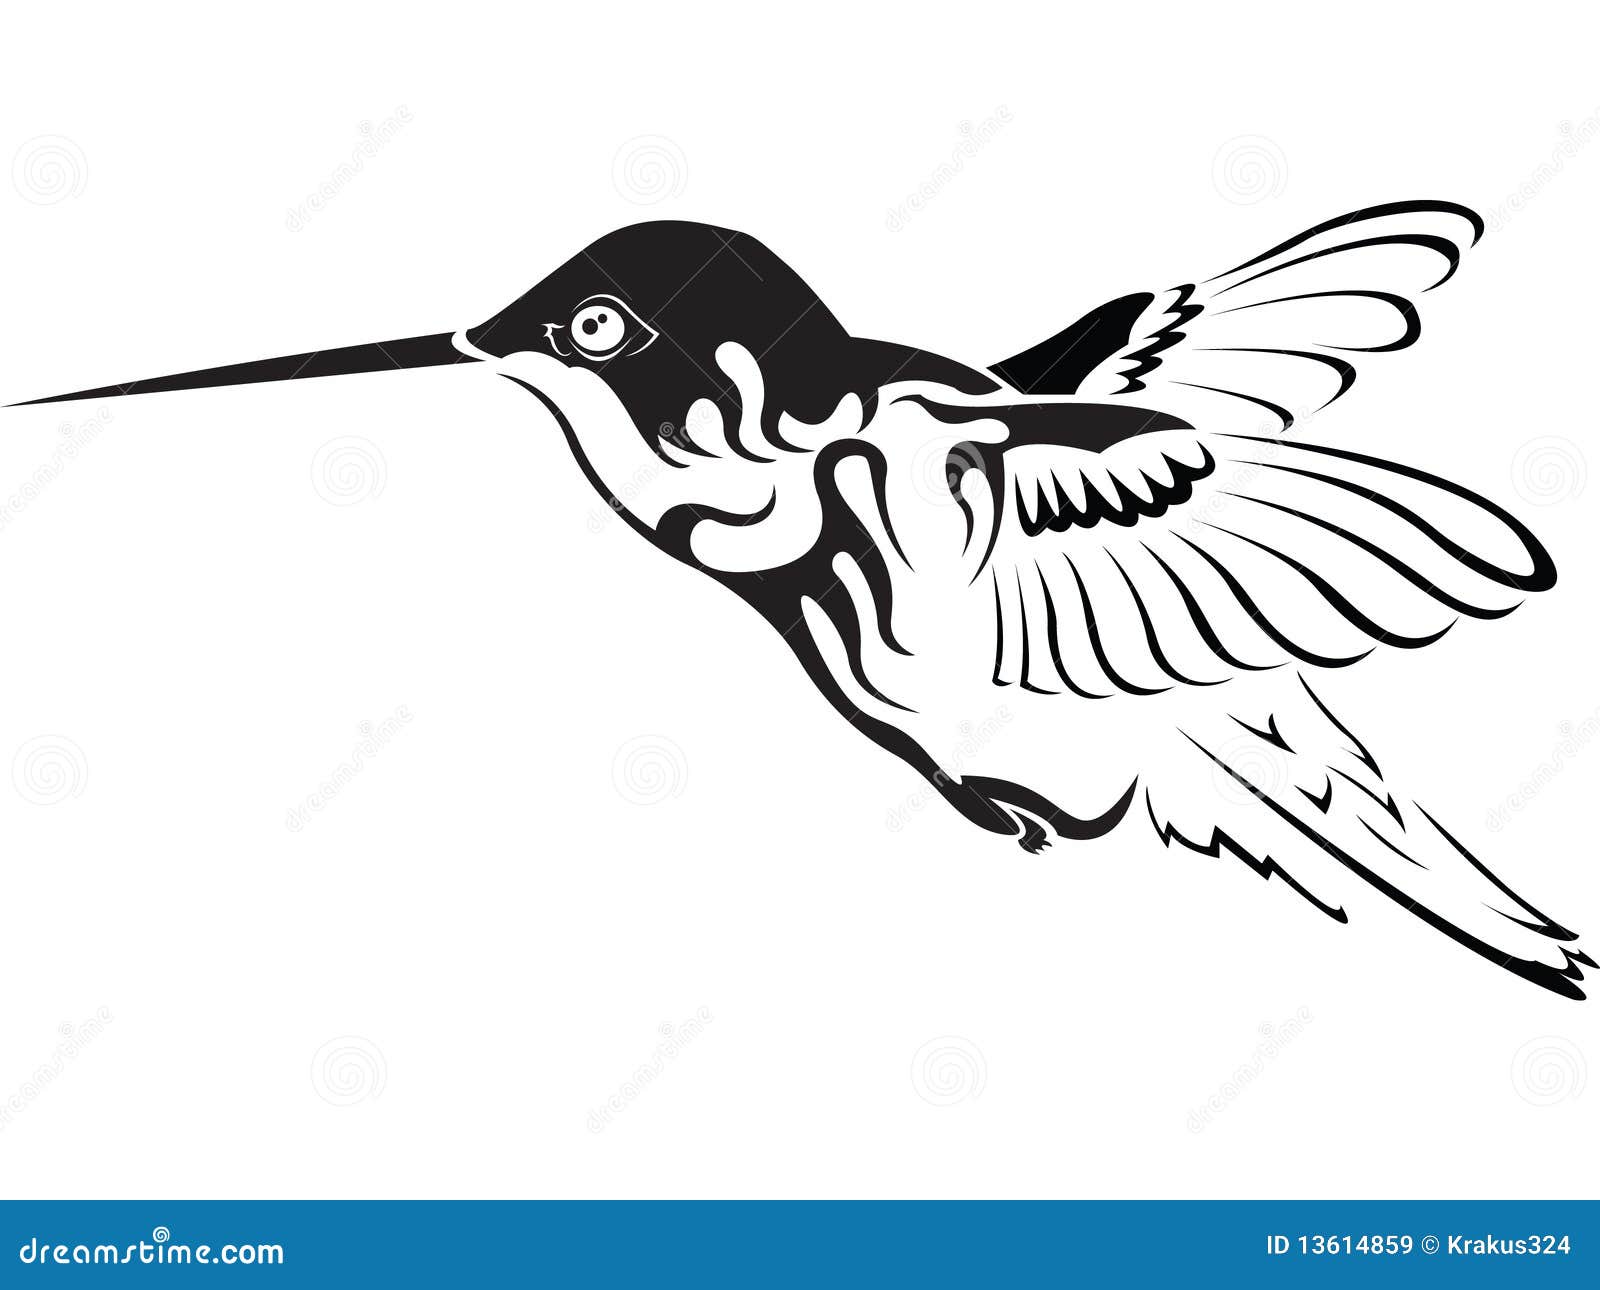 Hummingbird stock vector. Illustration of cartoon, artwork - 13614859